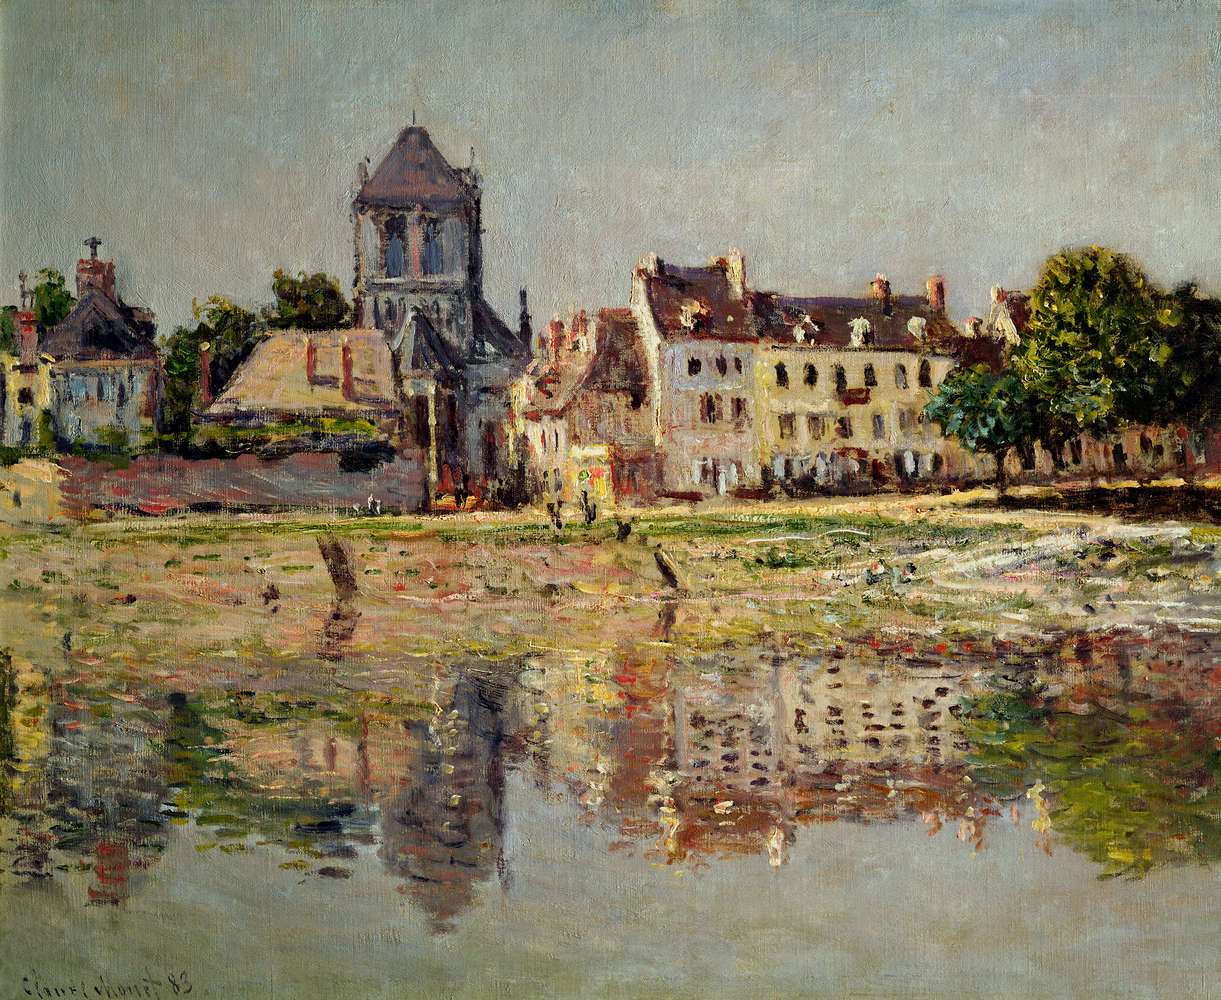             Fotomurali "Presso il fiume a Vernon" di Claude Monet
        